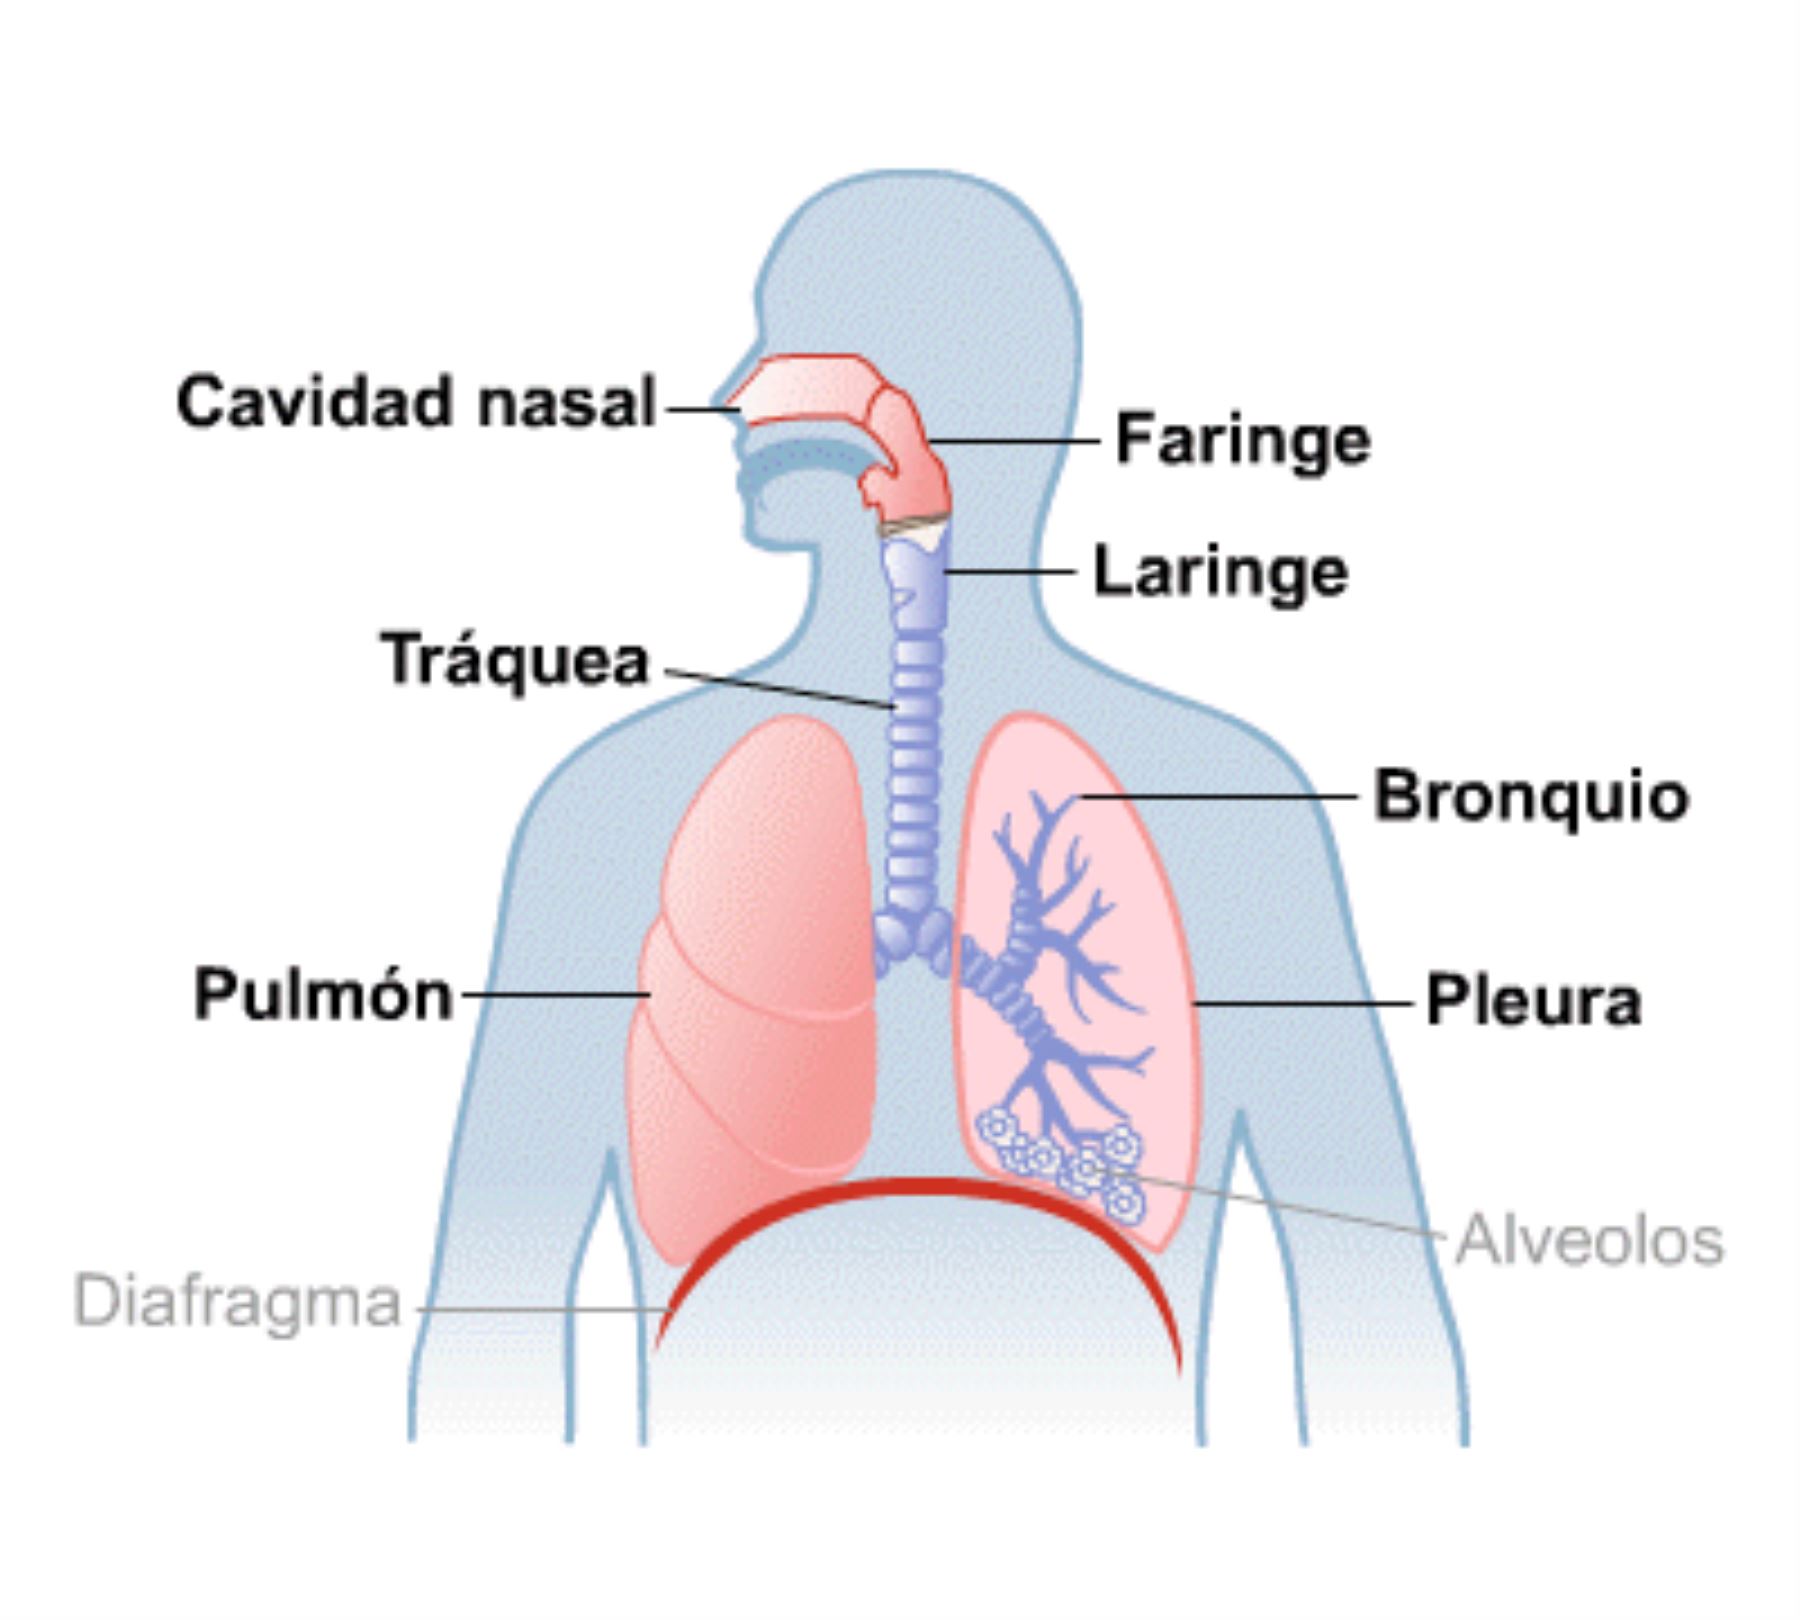 ¿Qué vías respiratorias son más afectadas por Ómicron?